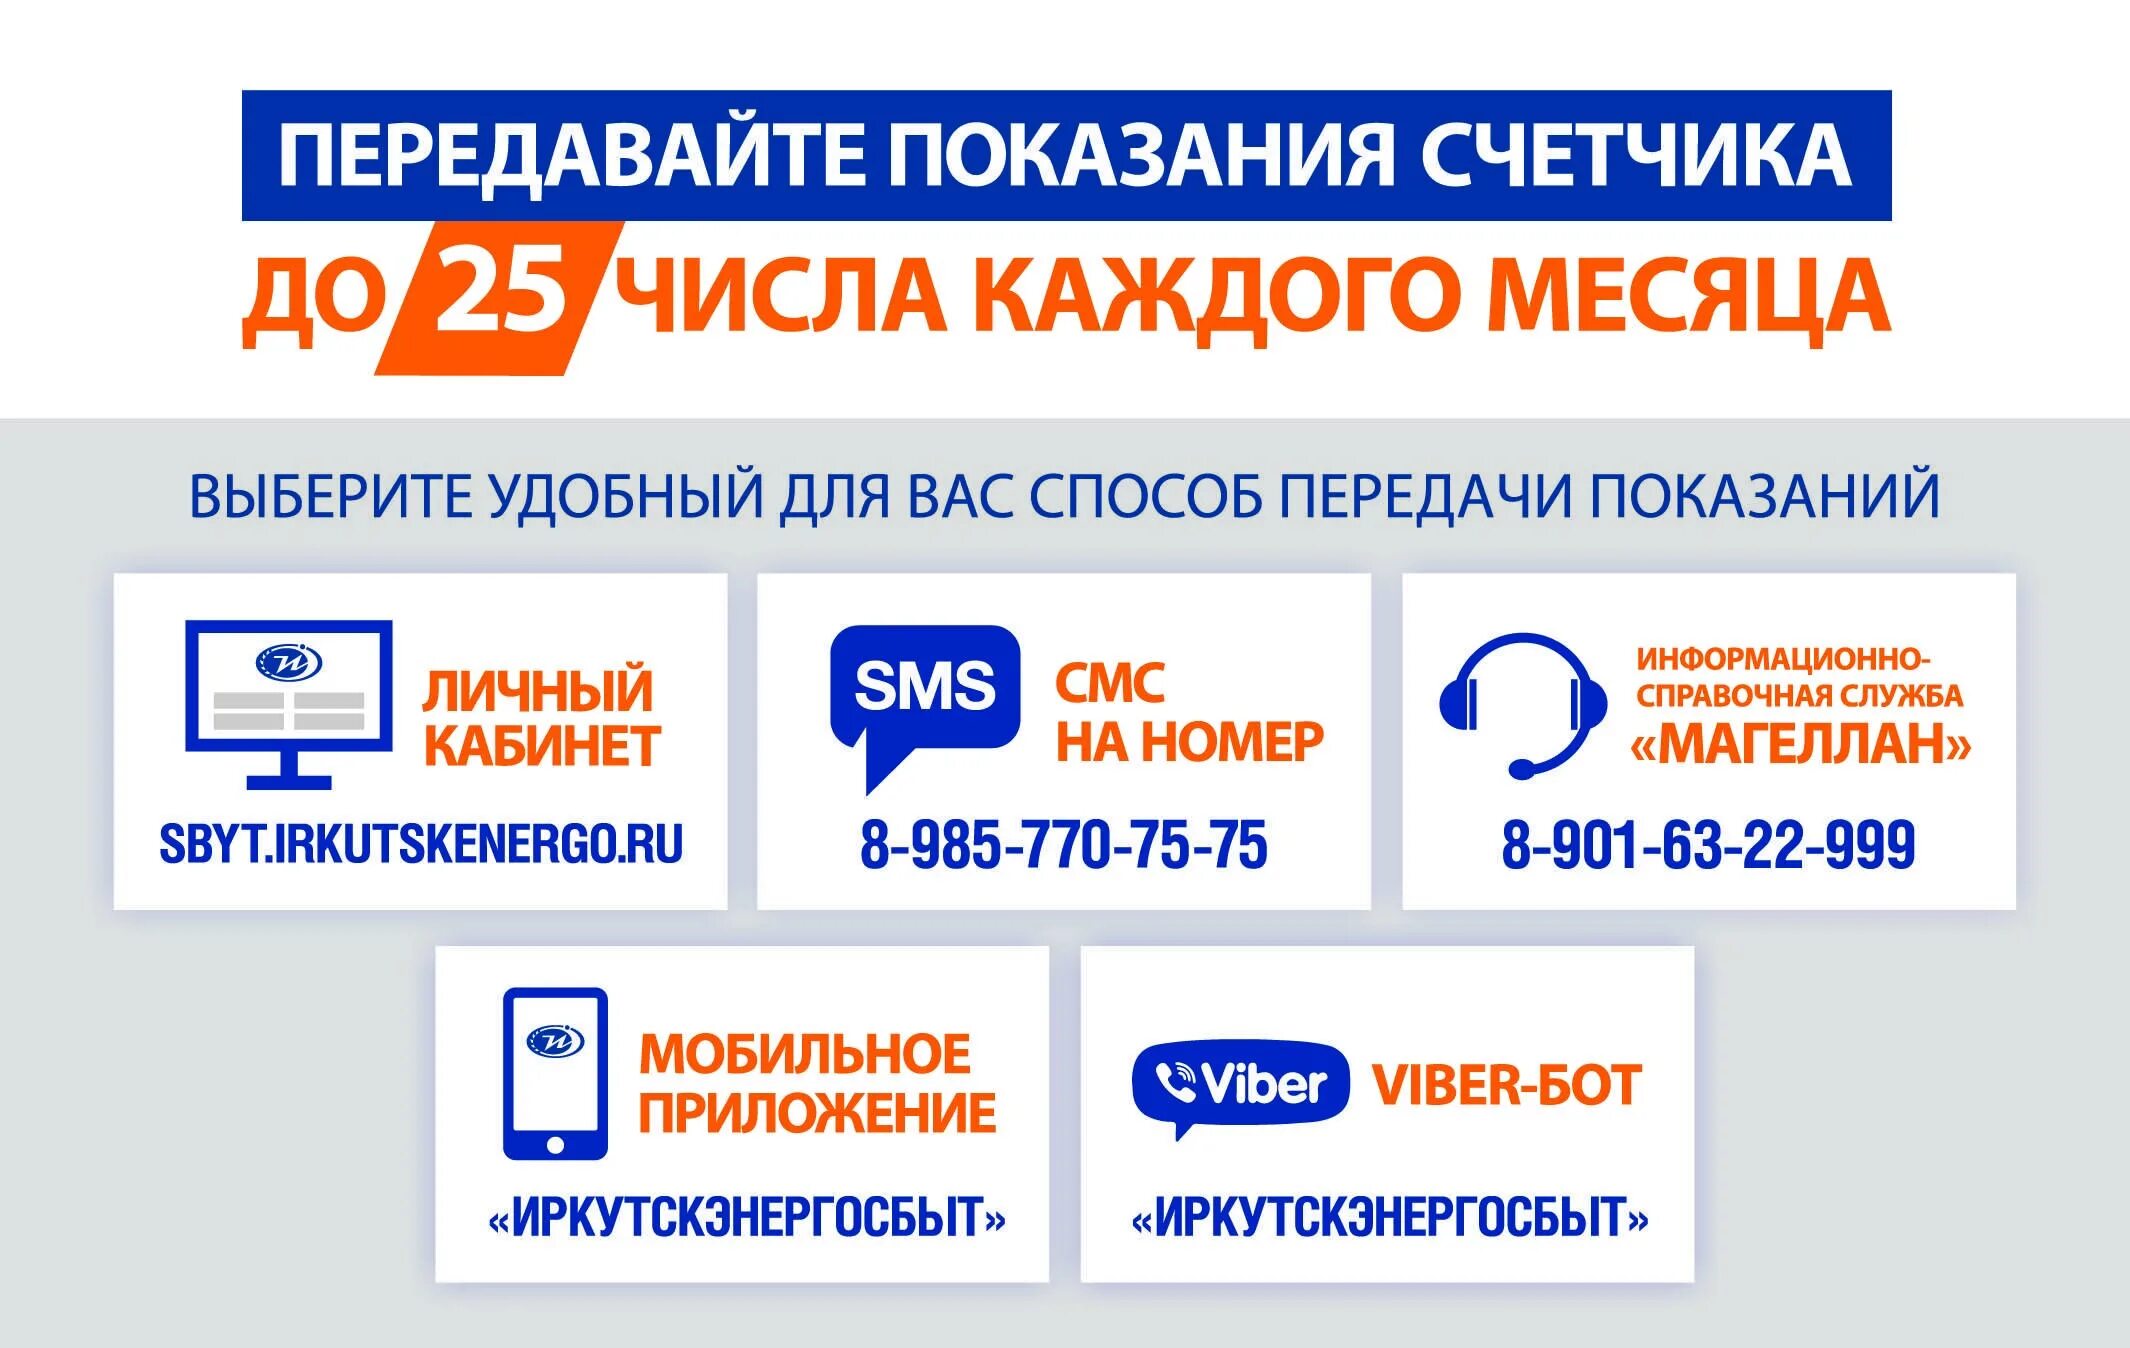 Показания электроэнергии московская область телефон. Иркутскэнергосбыт. Иркутскэнергосбыт личный. Способы передачи показаний. Иркутскэнергосбыт личный кабинет физического.